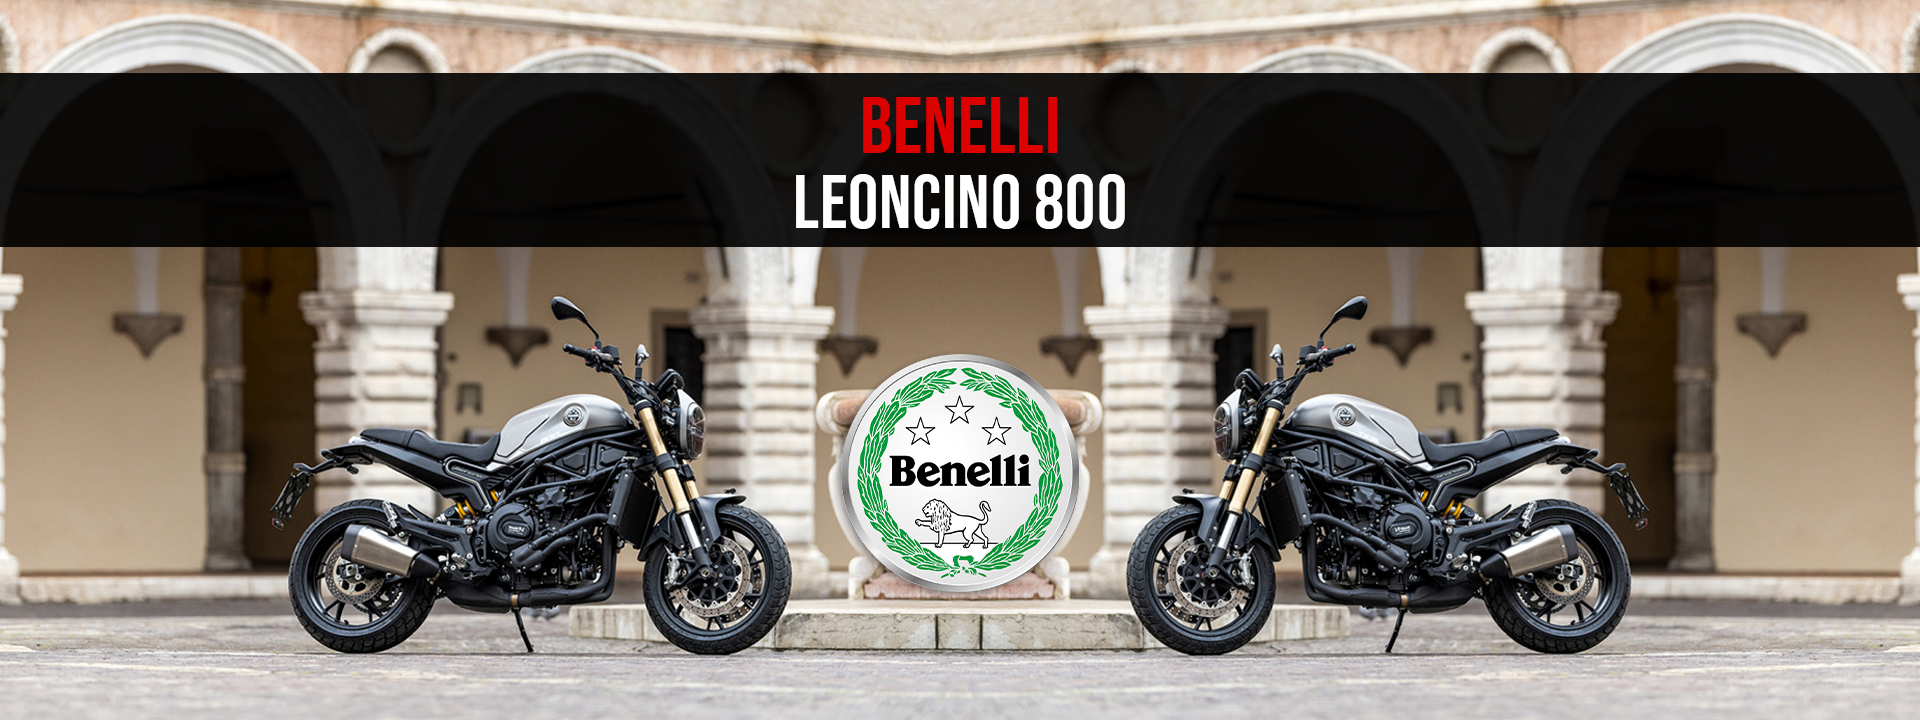 Leoncino 800 - Eleganța întruchipată